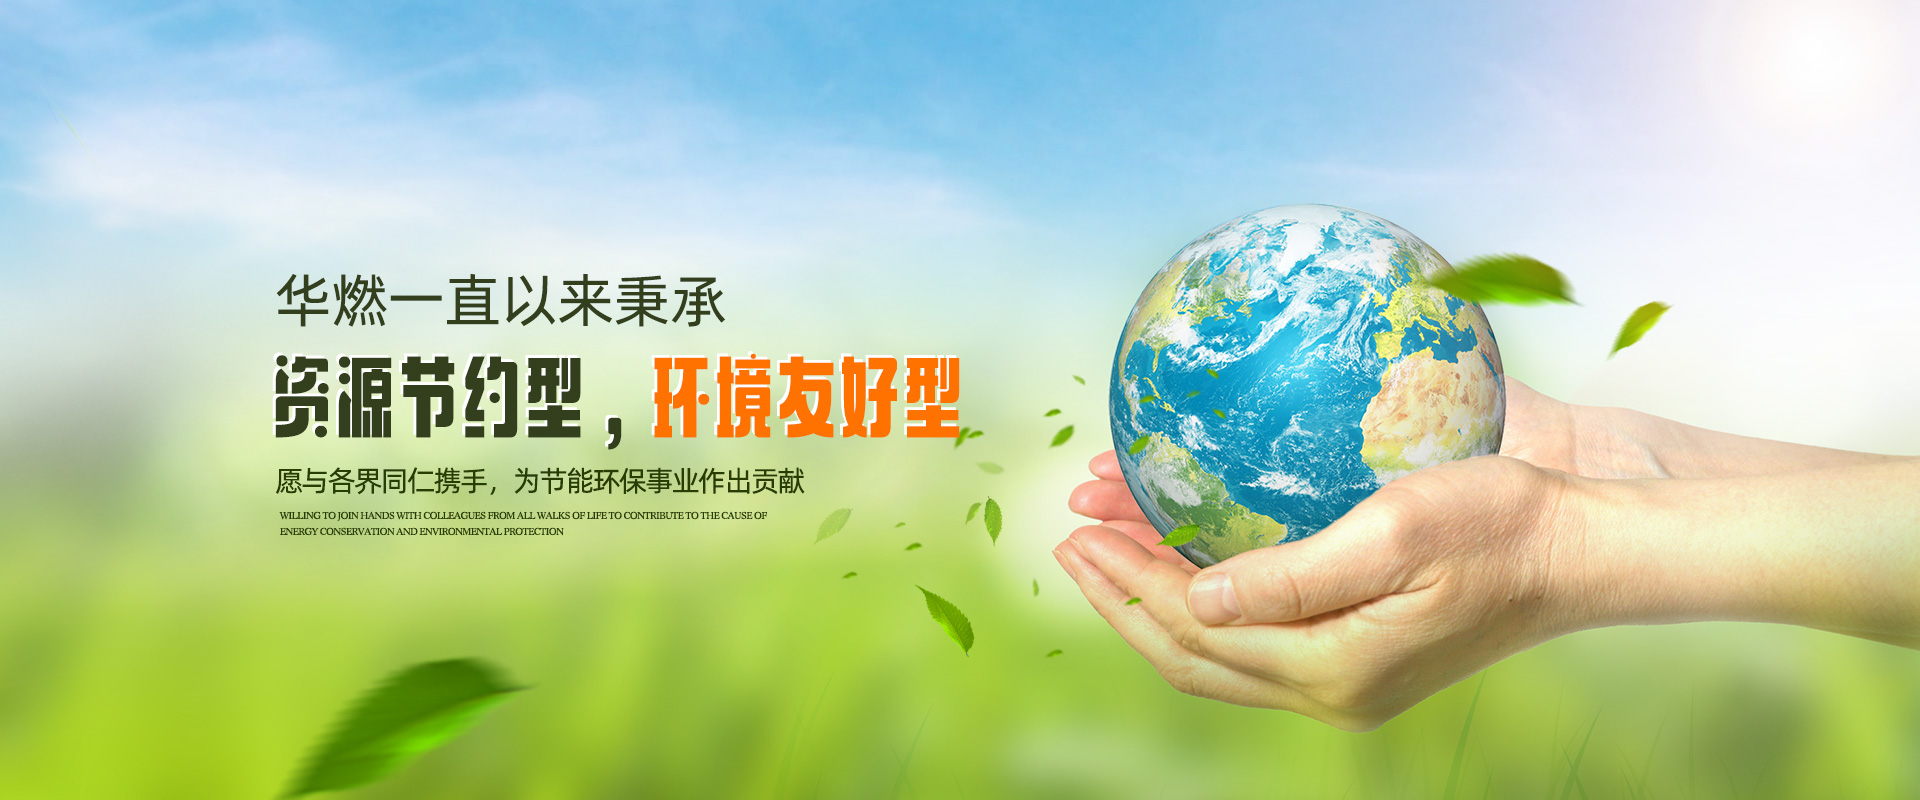 河南再生資源回收-再生資源回收公司-洛陽華燃石化科技有限公司